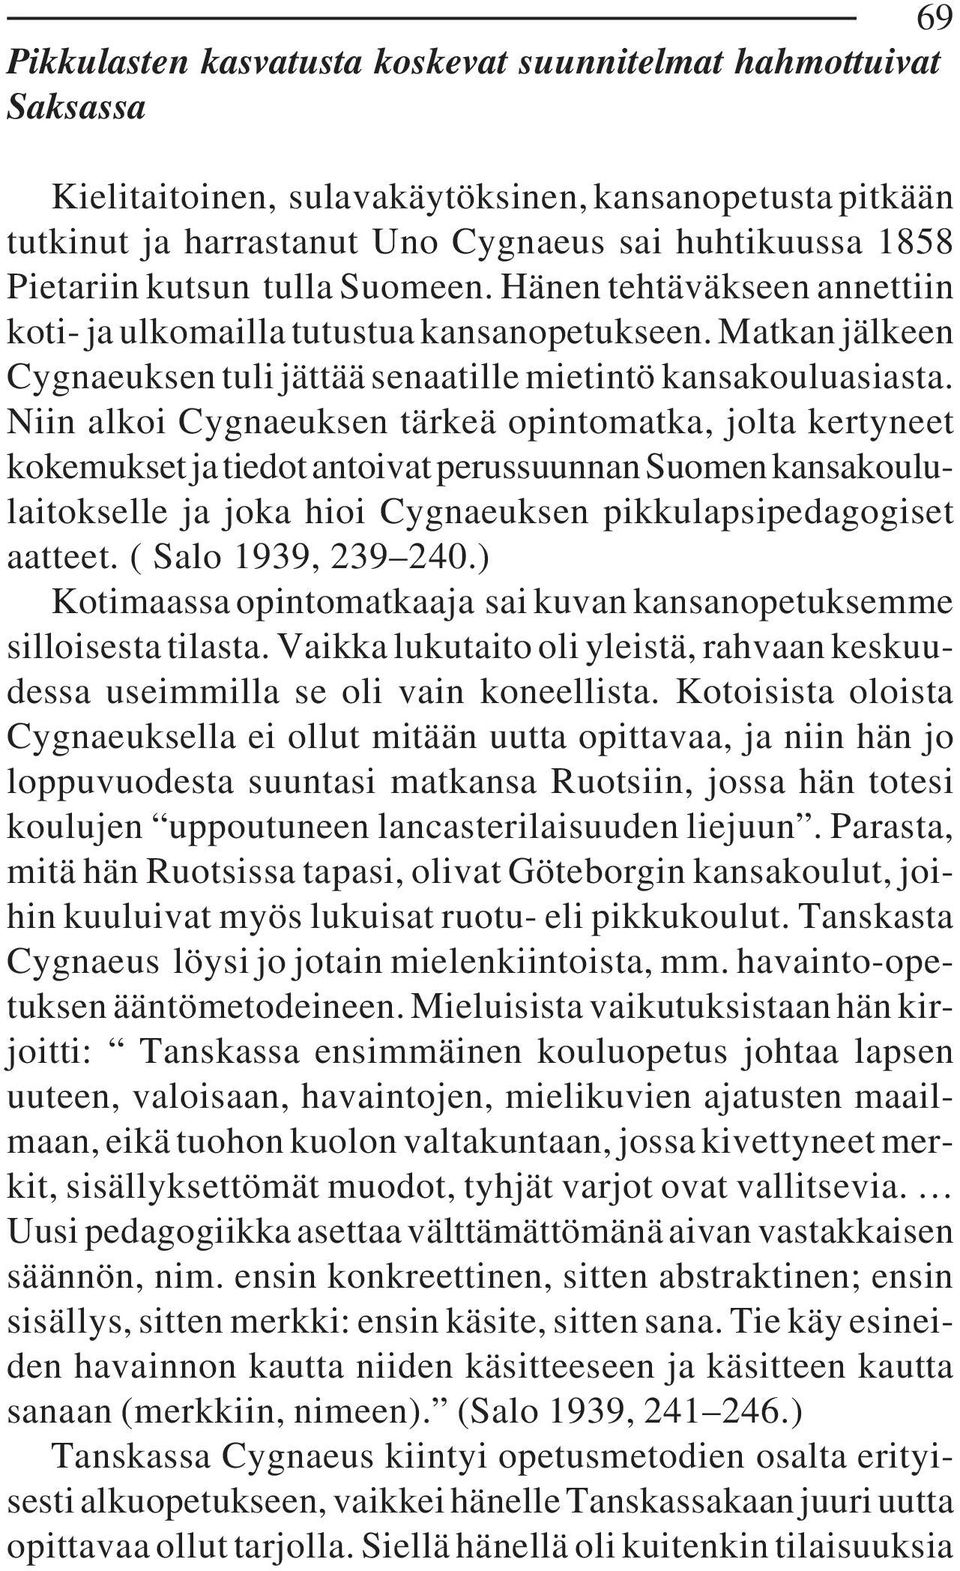 Niin alkoi Cygnaeuksen tärkeä opintomatka, jolta kertyneet kokemukset ja tiedot antoivat perussuunnan Suomen kansakoululaitokselle ja joka hioi Cygnaeuksen pikkulapsipedagogiset aatteet.